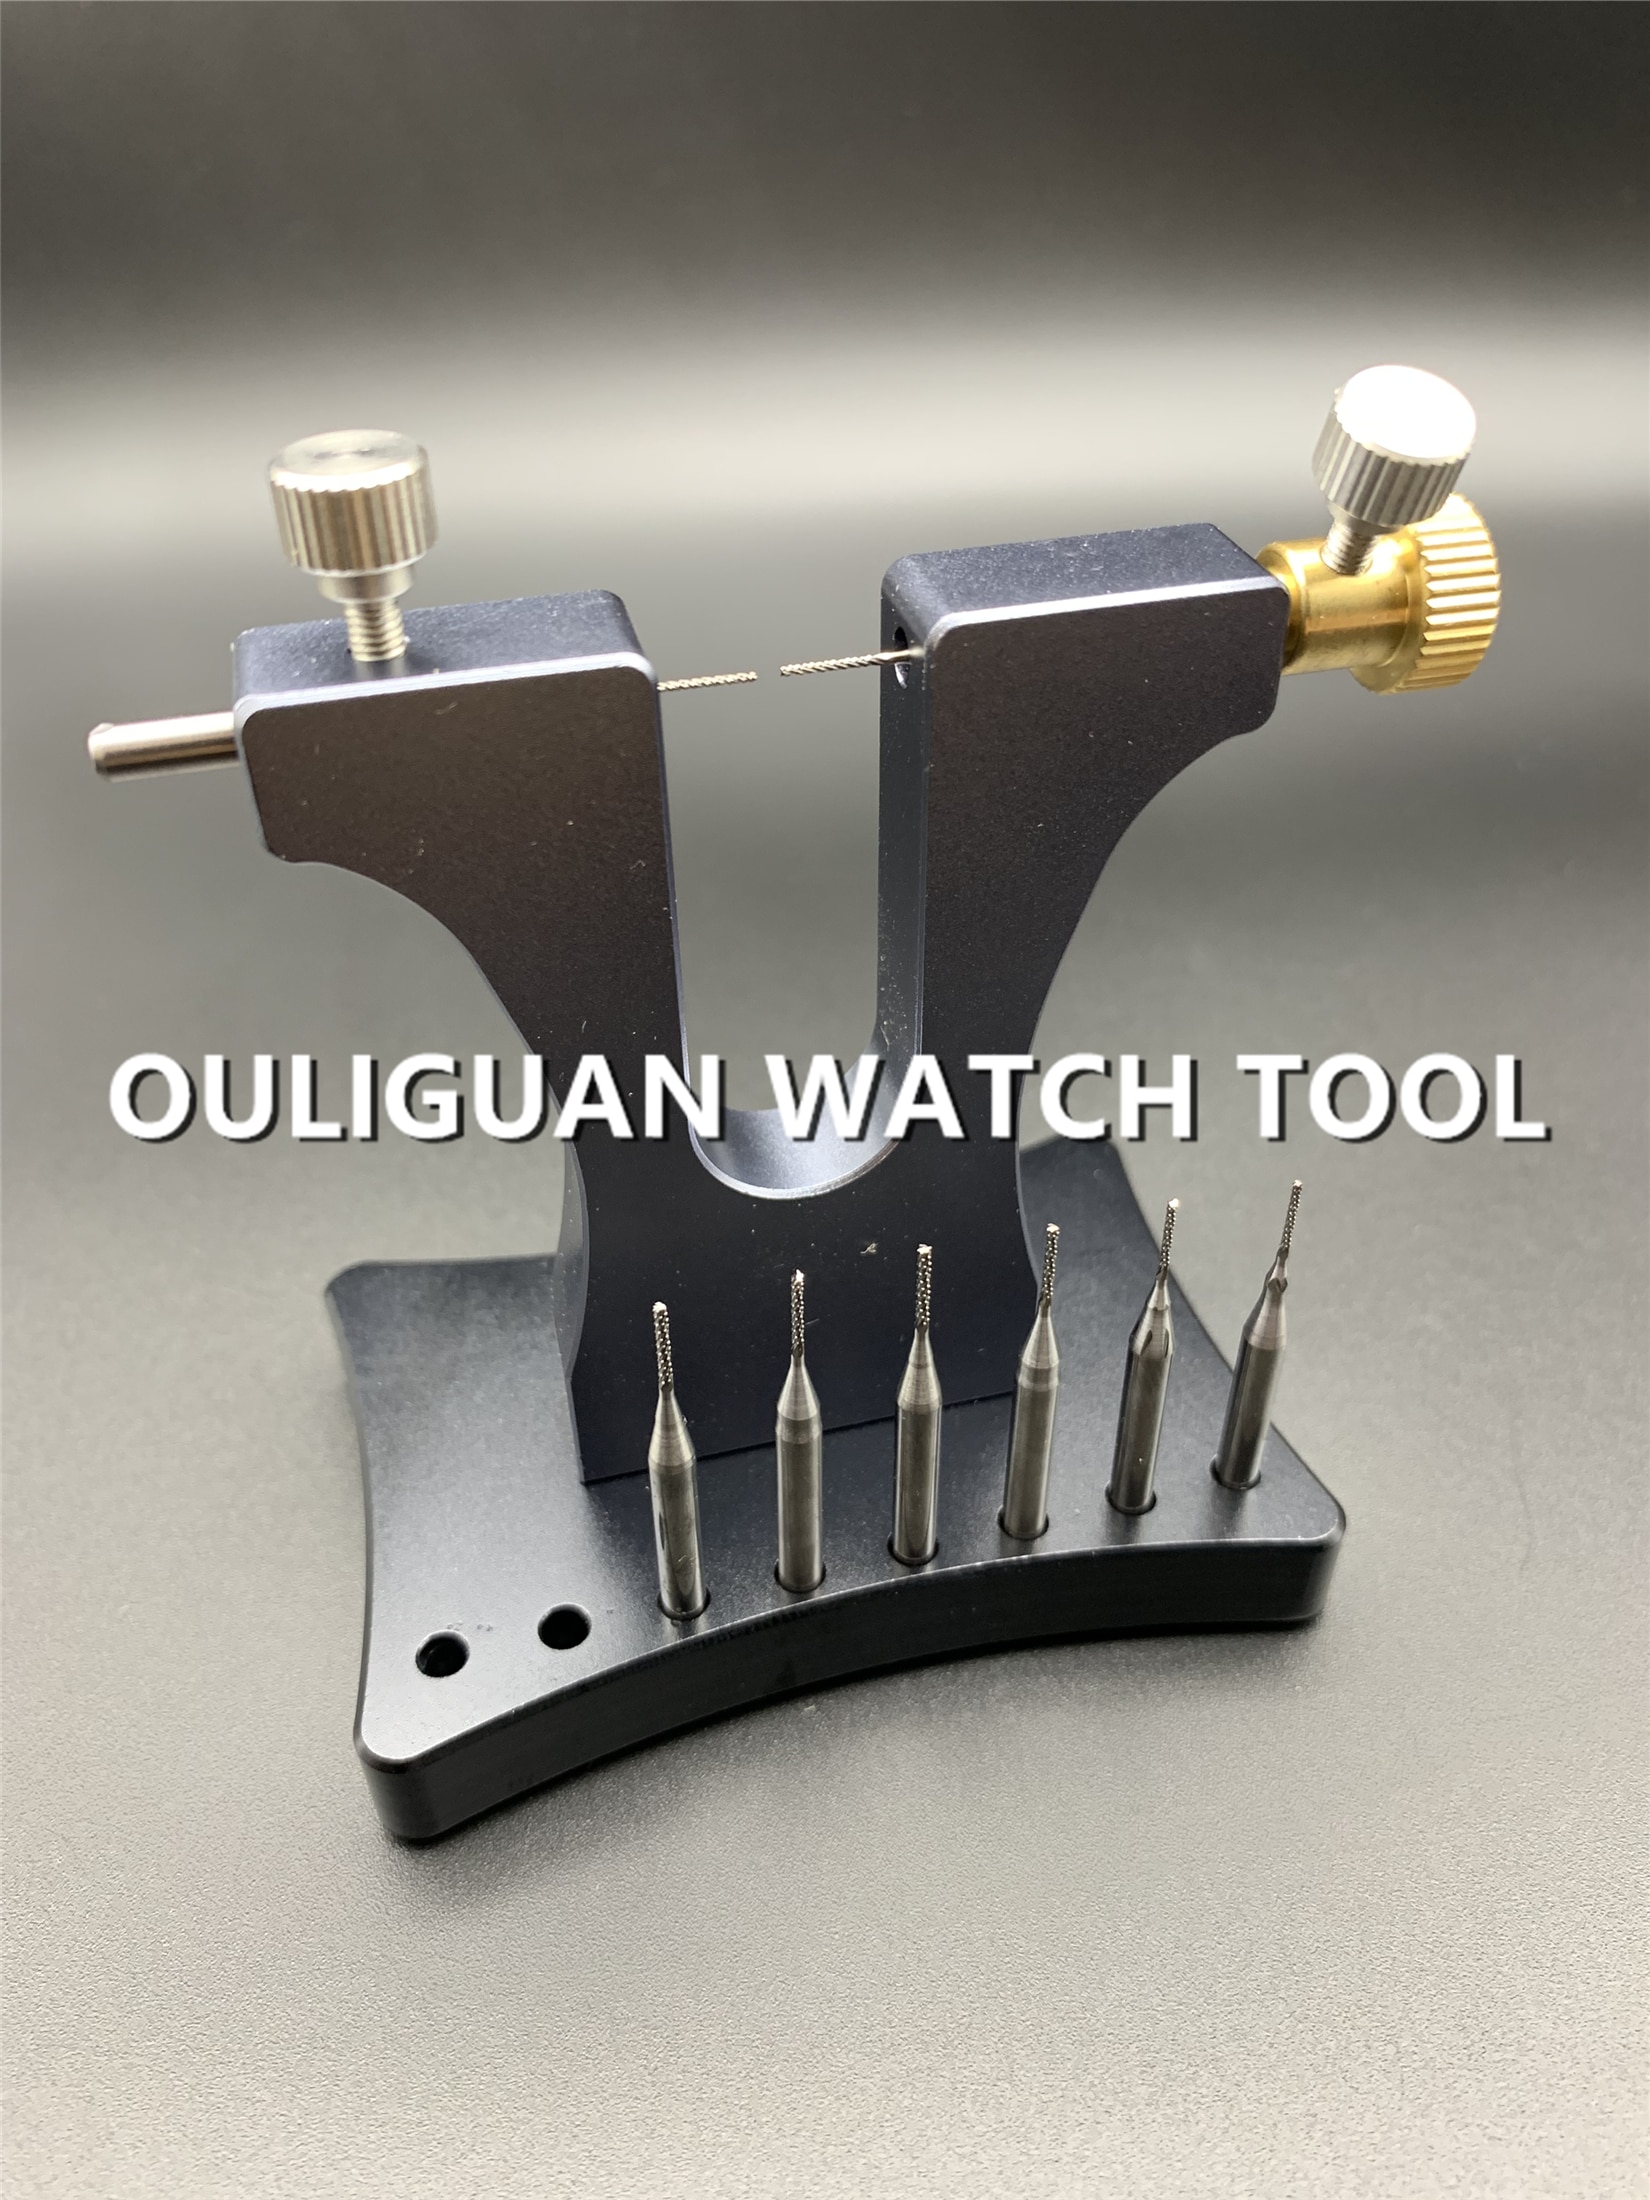 Professionele Rvs 8 Pins Beschadigd Schroef Extractor Gebroken Schroef Remover Tool tool voor horlogemaker horloge reparatie tool